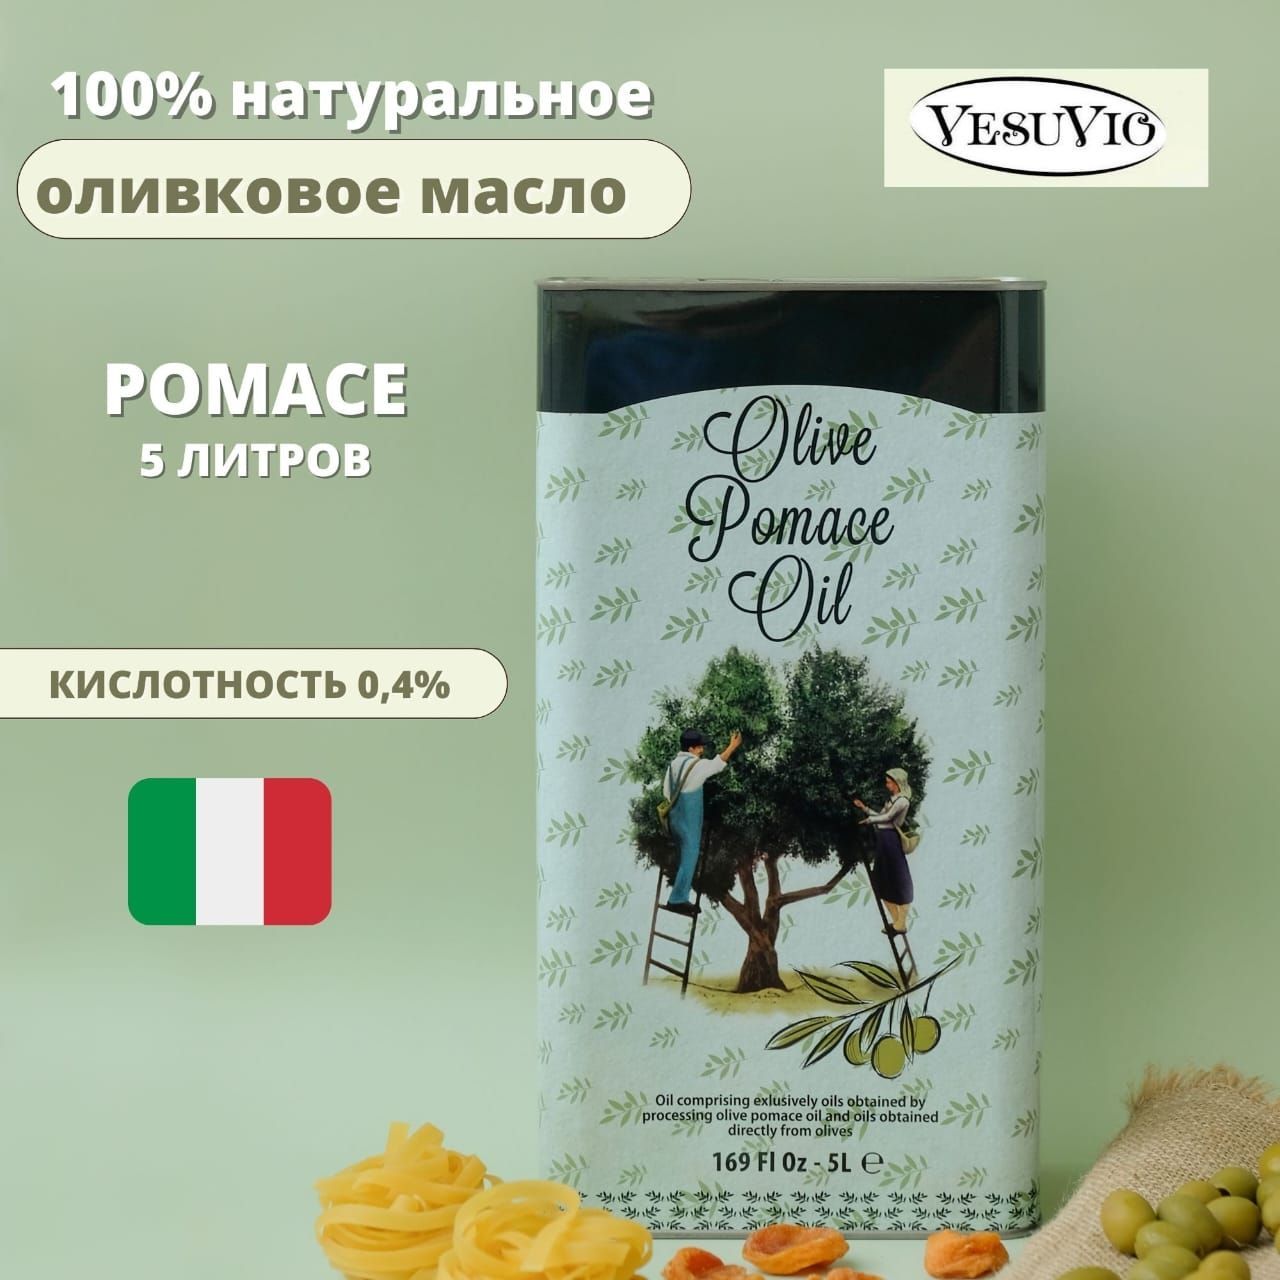 Масло оливковое магнит 1 литр. Оливковое масло для мяса. Оливковое масло Амфора. Масло оливковое Bonvida Olive Pomace Oil. Оливковое масло принцесса